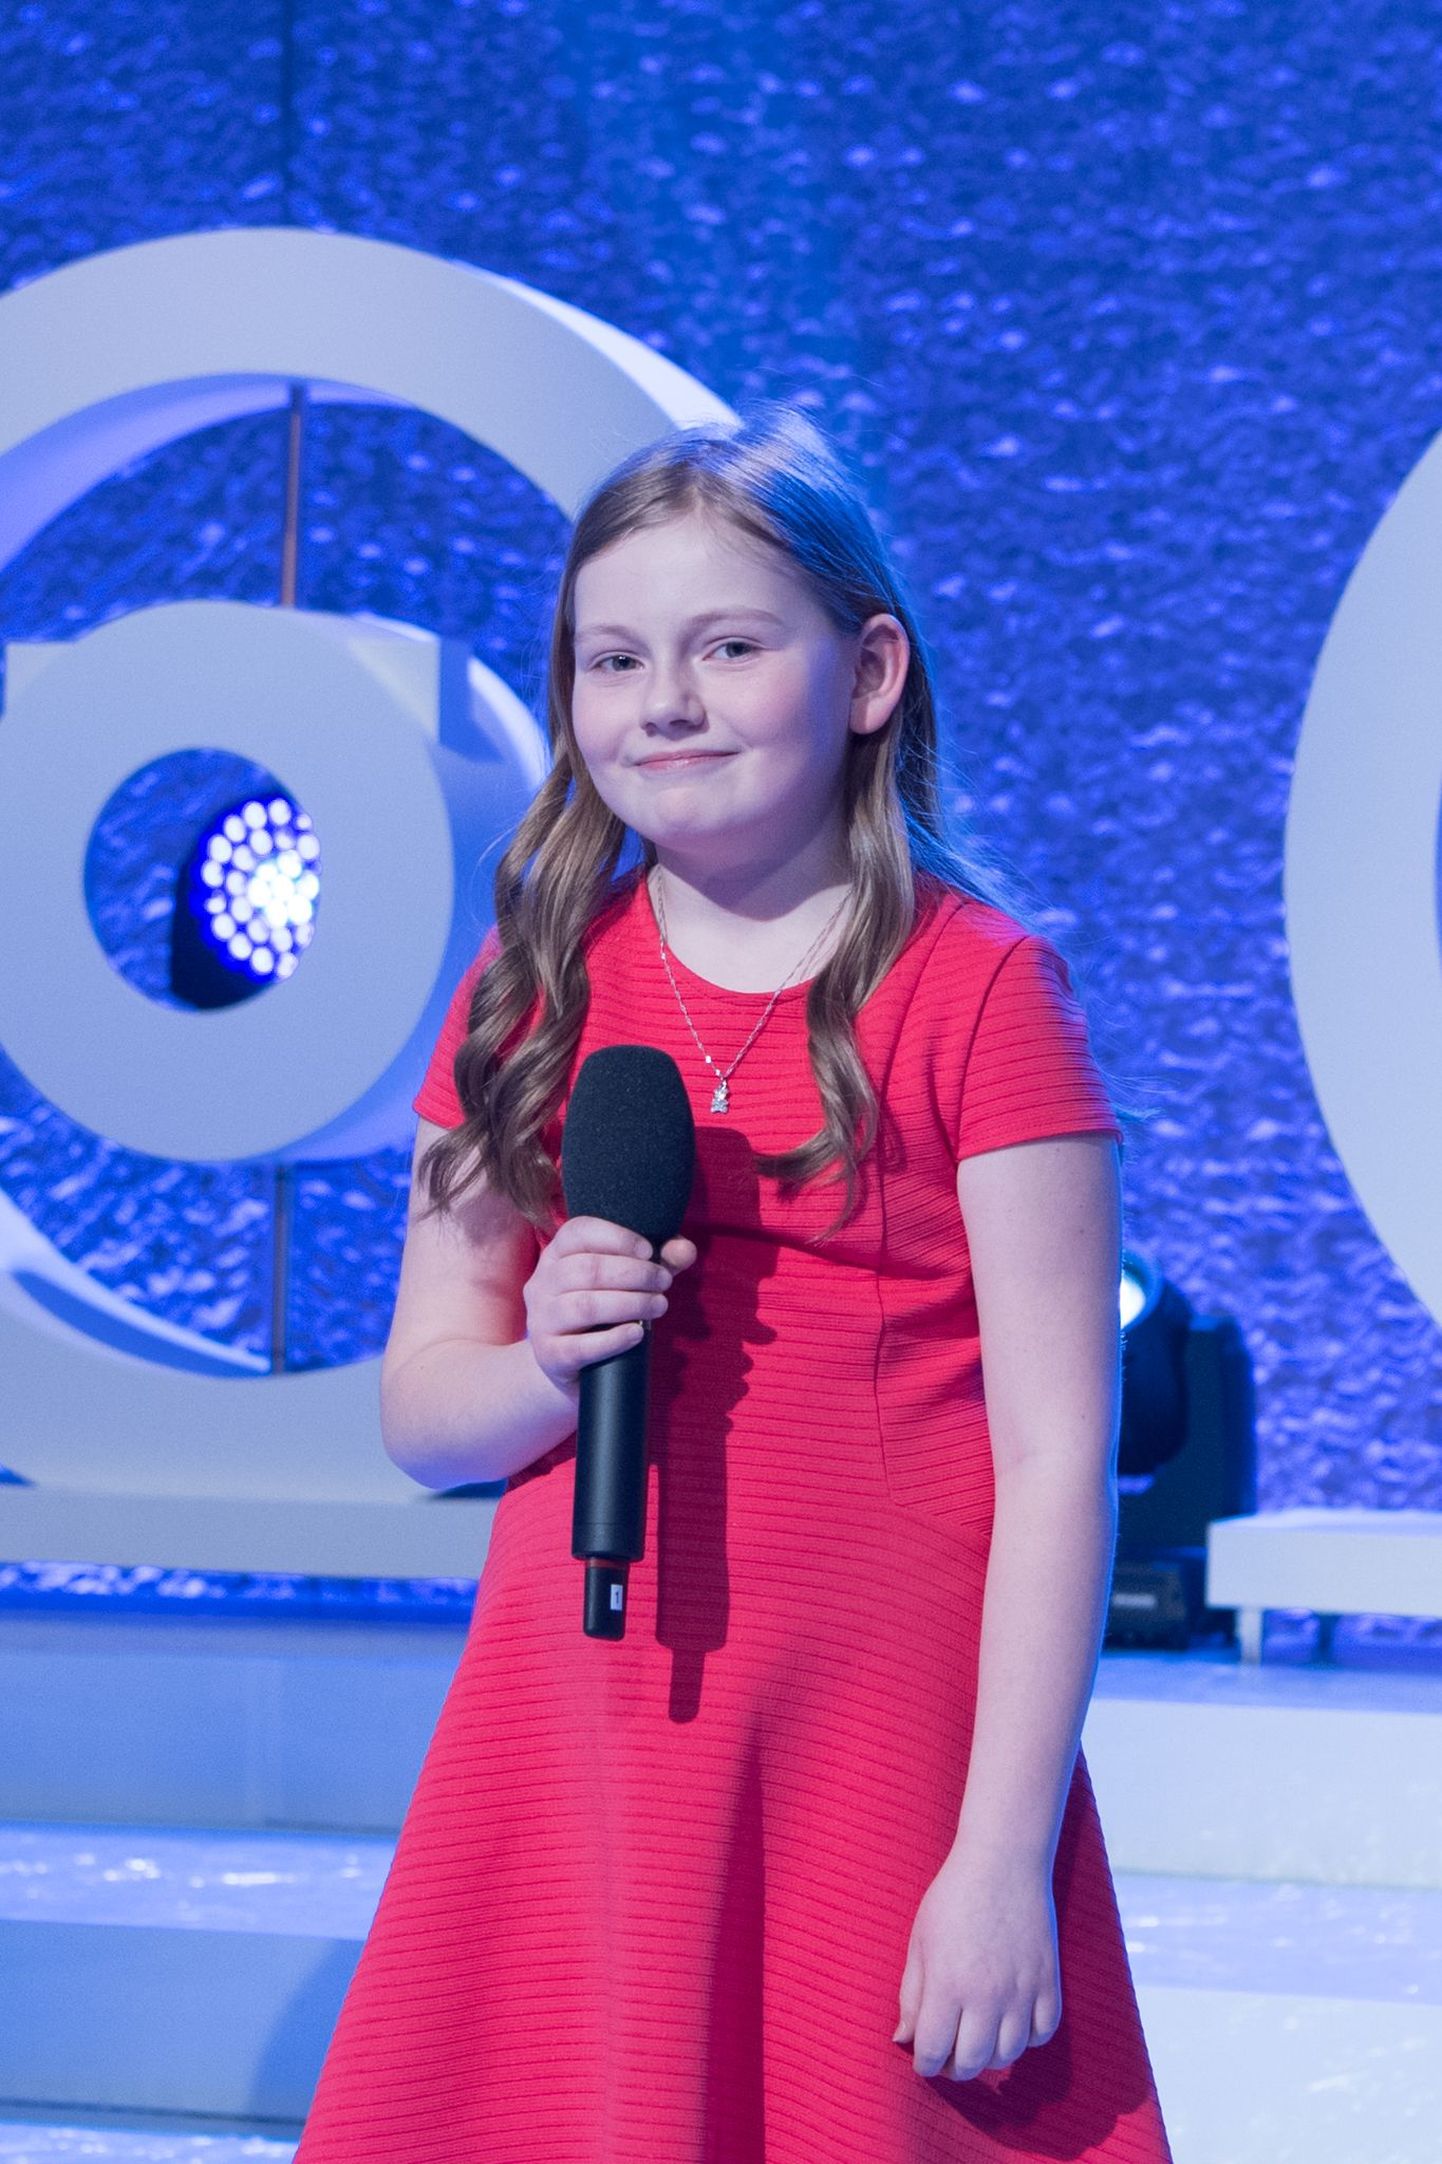 Eesti Televisiooni laste ja noorte lauluvõistluse "Laulukarussell" keskmise vanuserühma võitja, Suure-Jaani muusikastuudio laululaps Triinu Johanna Sepp.